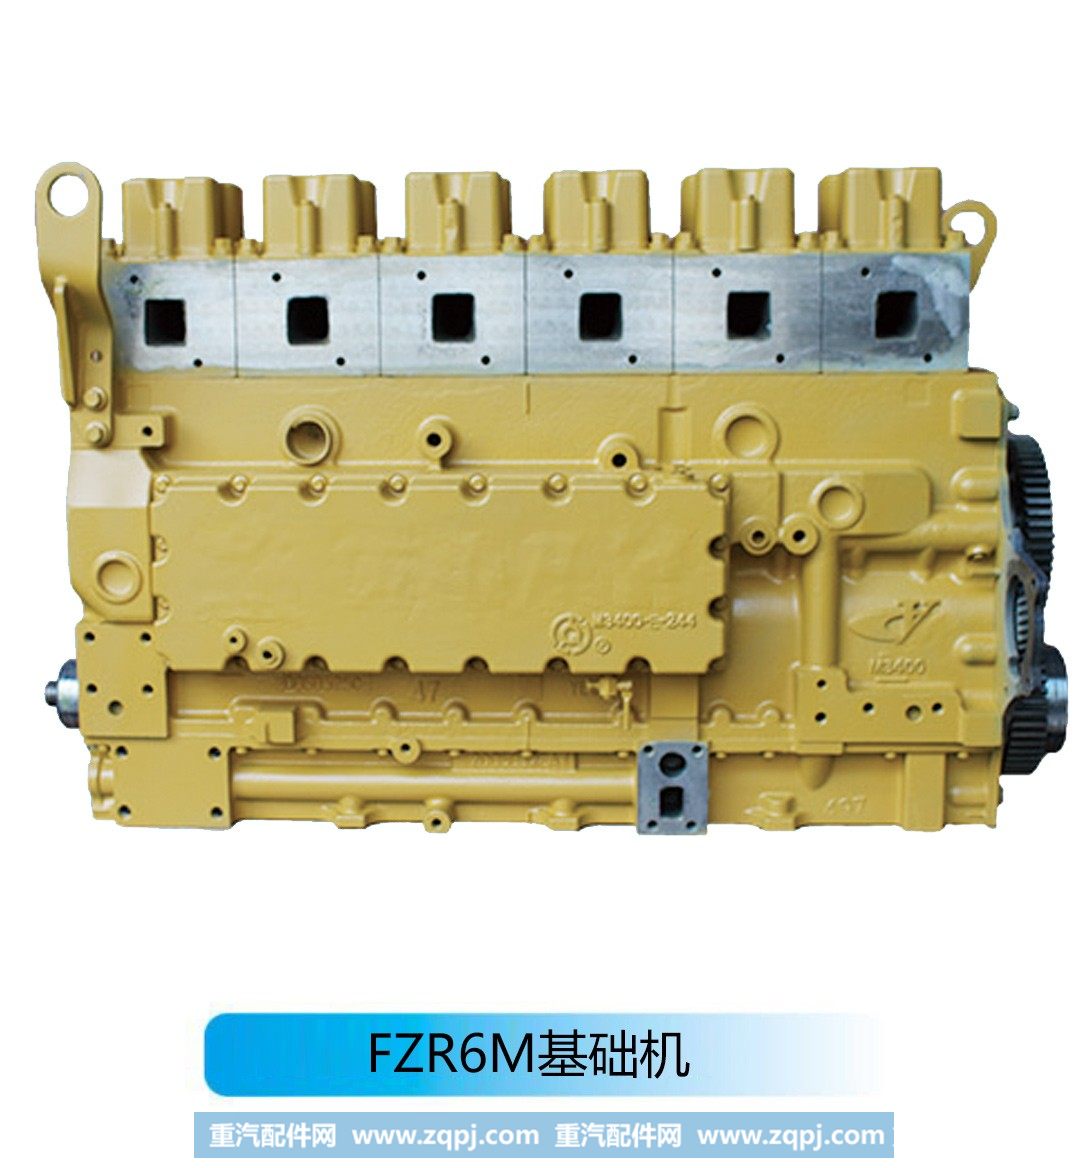 柴油发动机--FZR6M基础机【法泽尔发动机】/